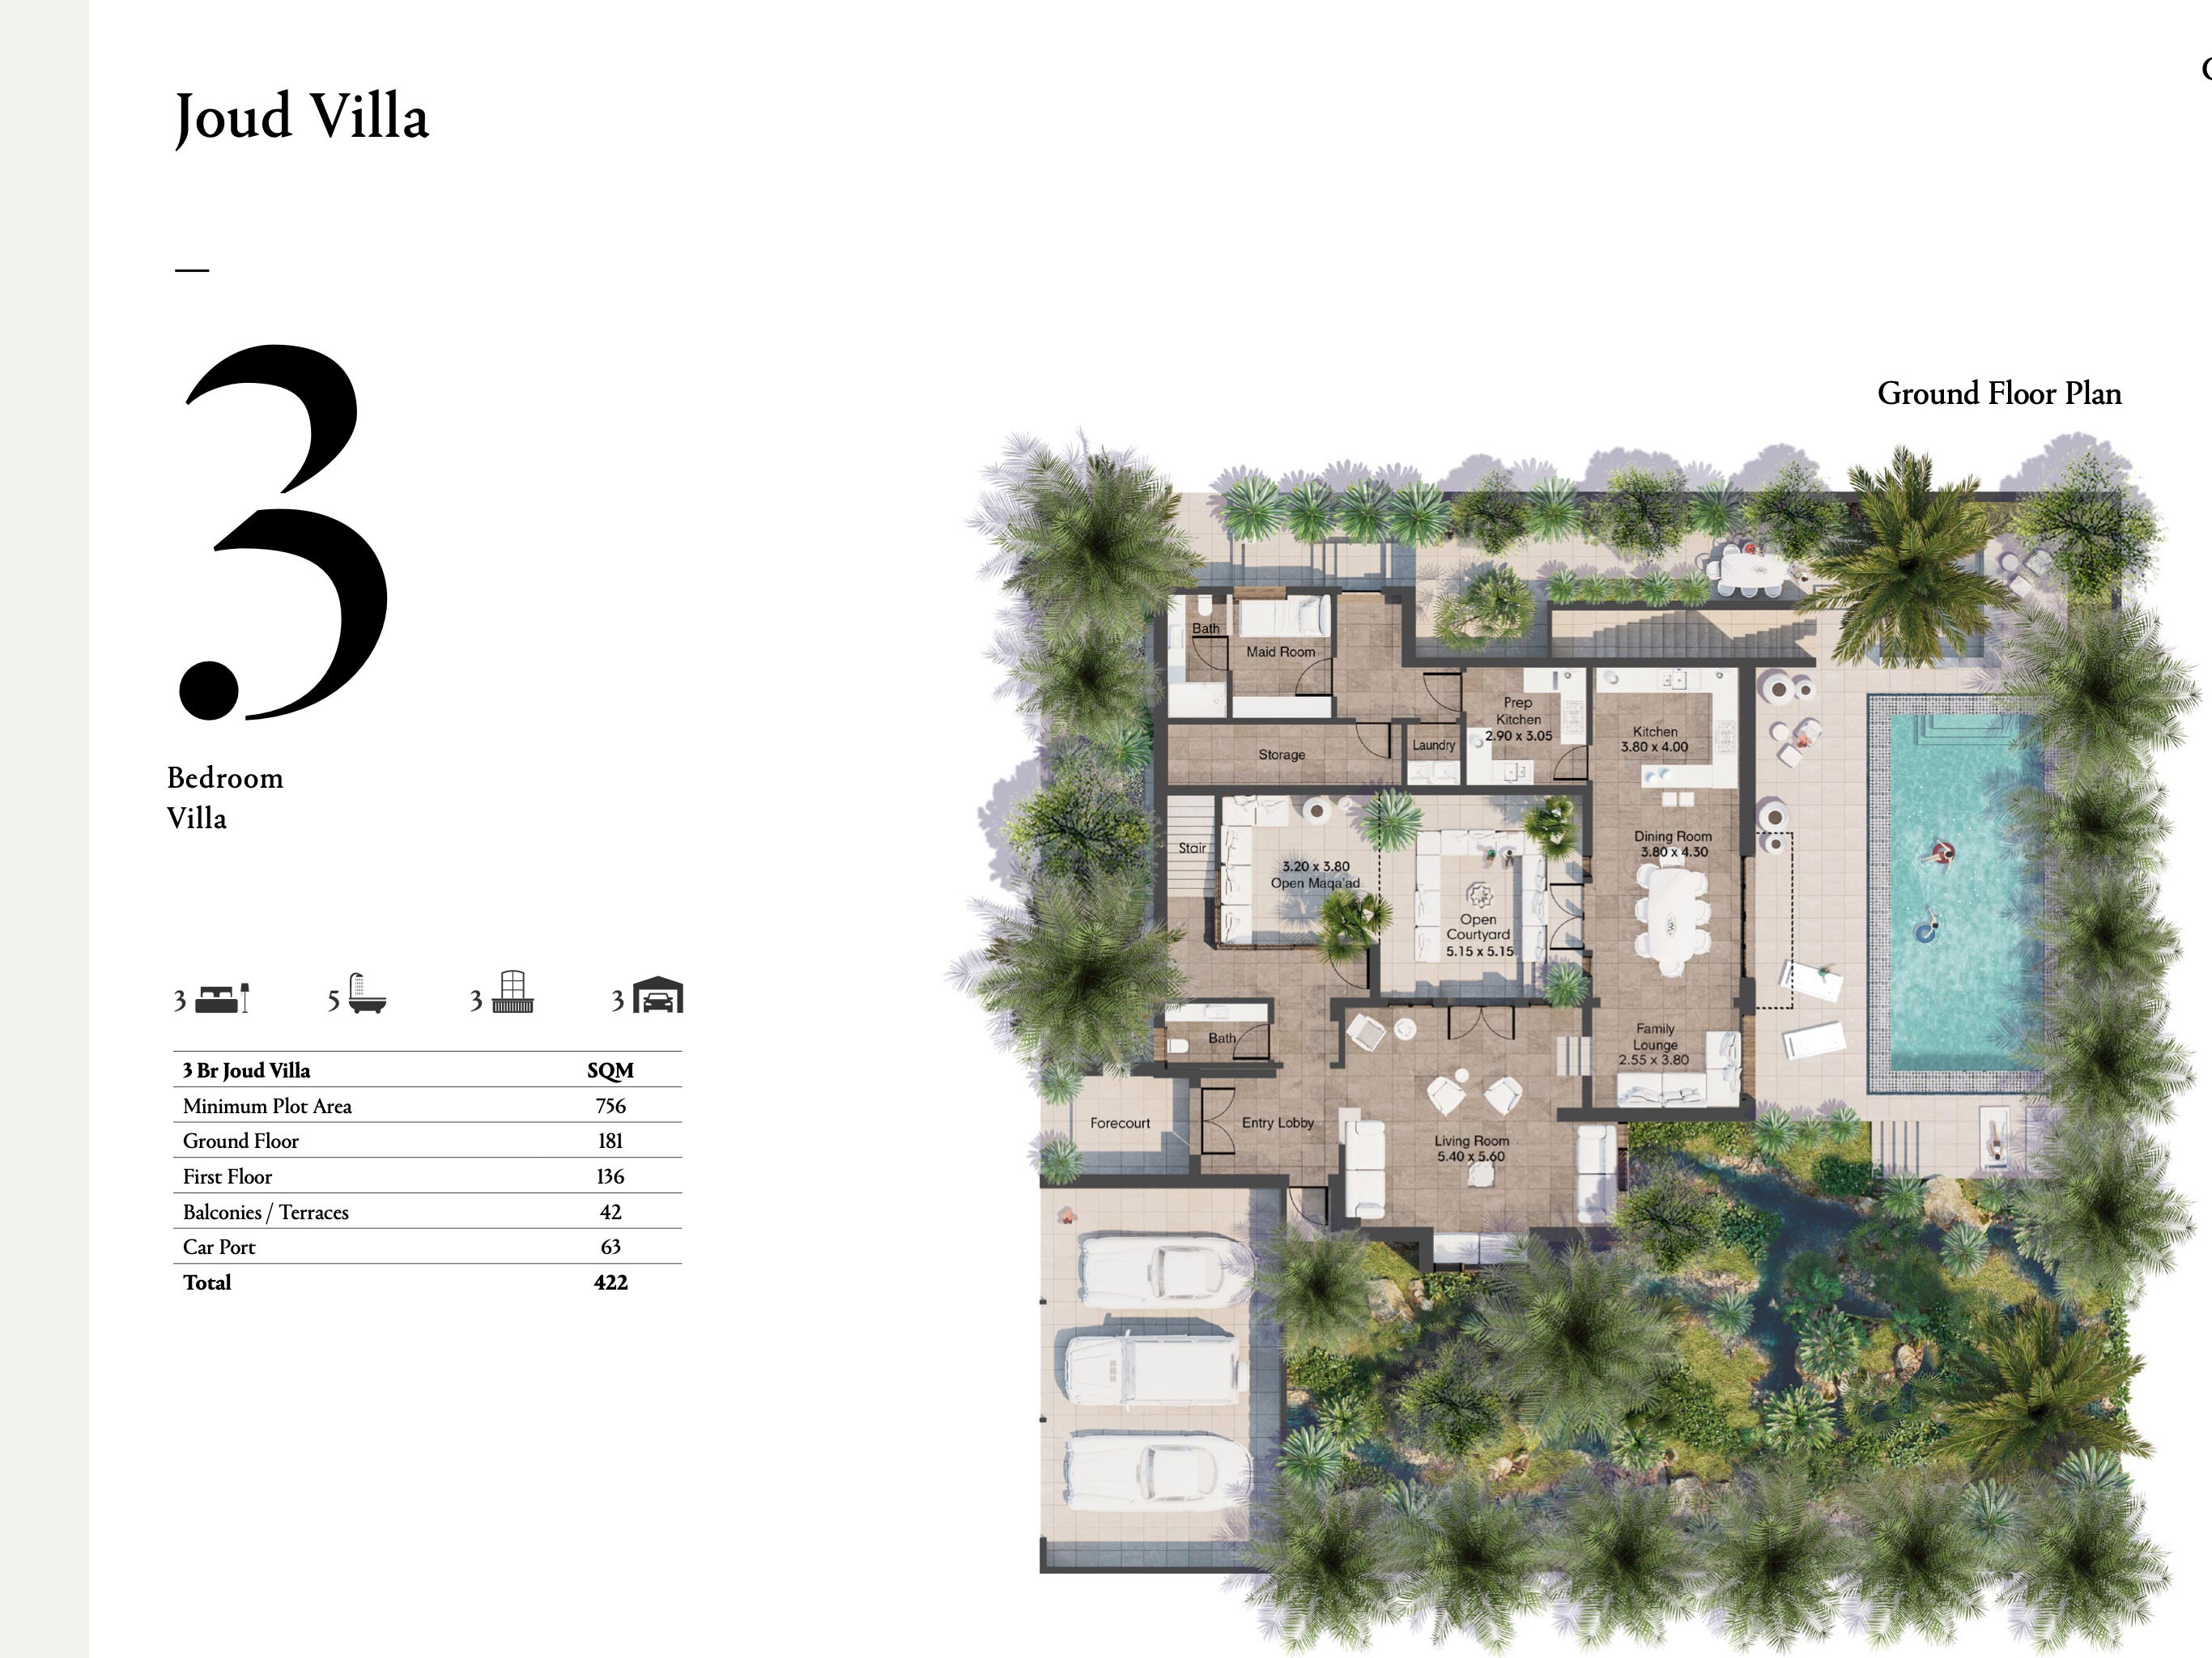 3-Bedroom-Joud-Villas--Size-422-sqm